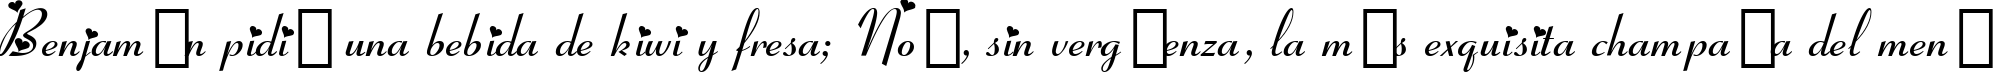 Пример написания шрифтом Ribbon Heart текста на испанском